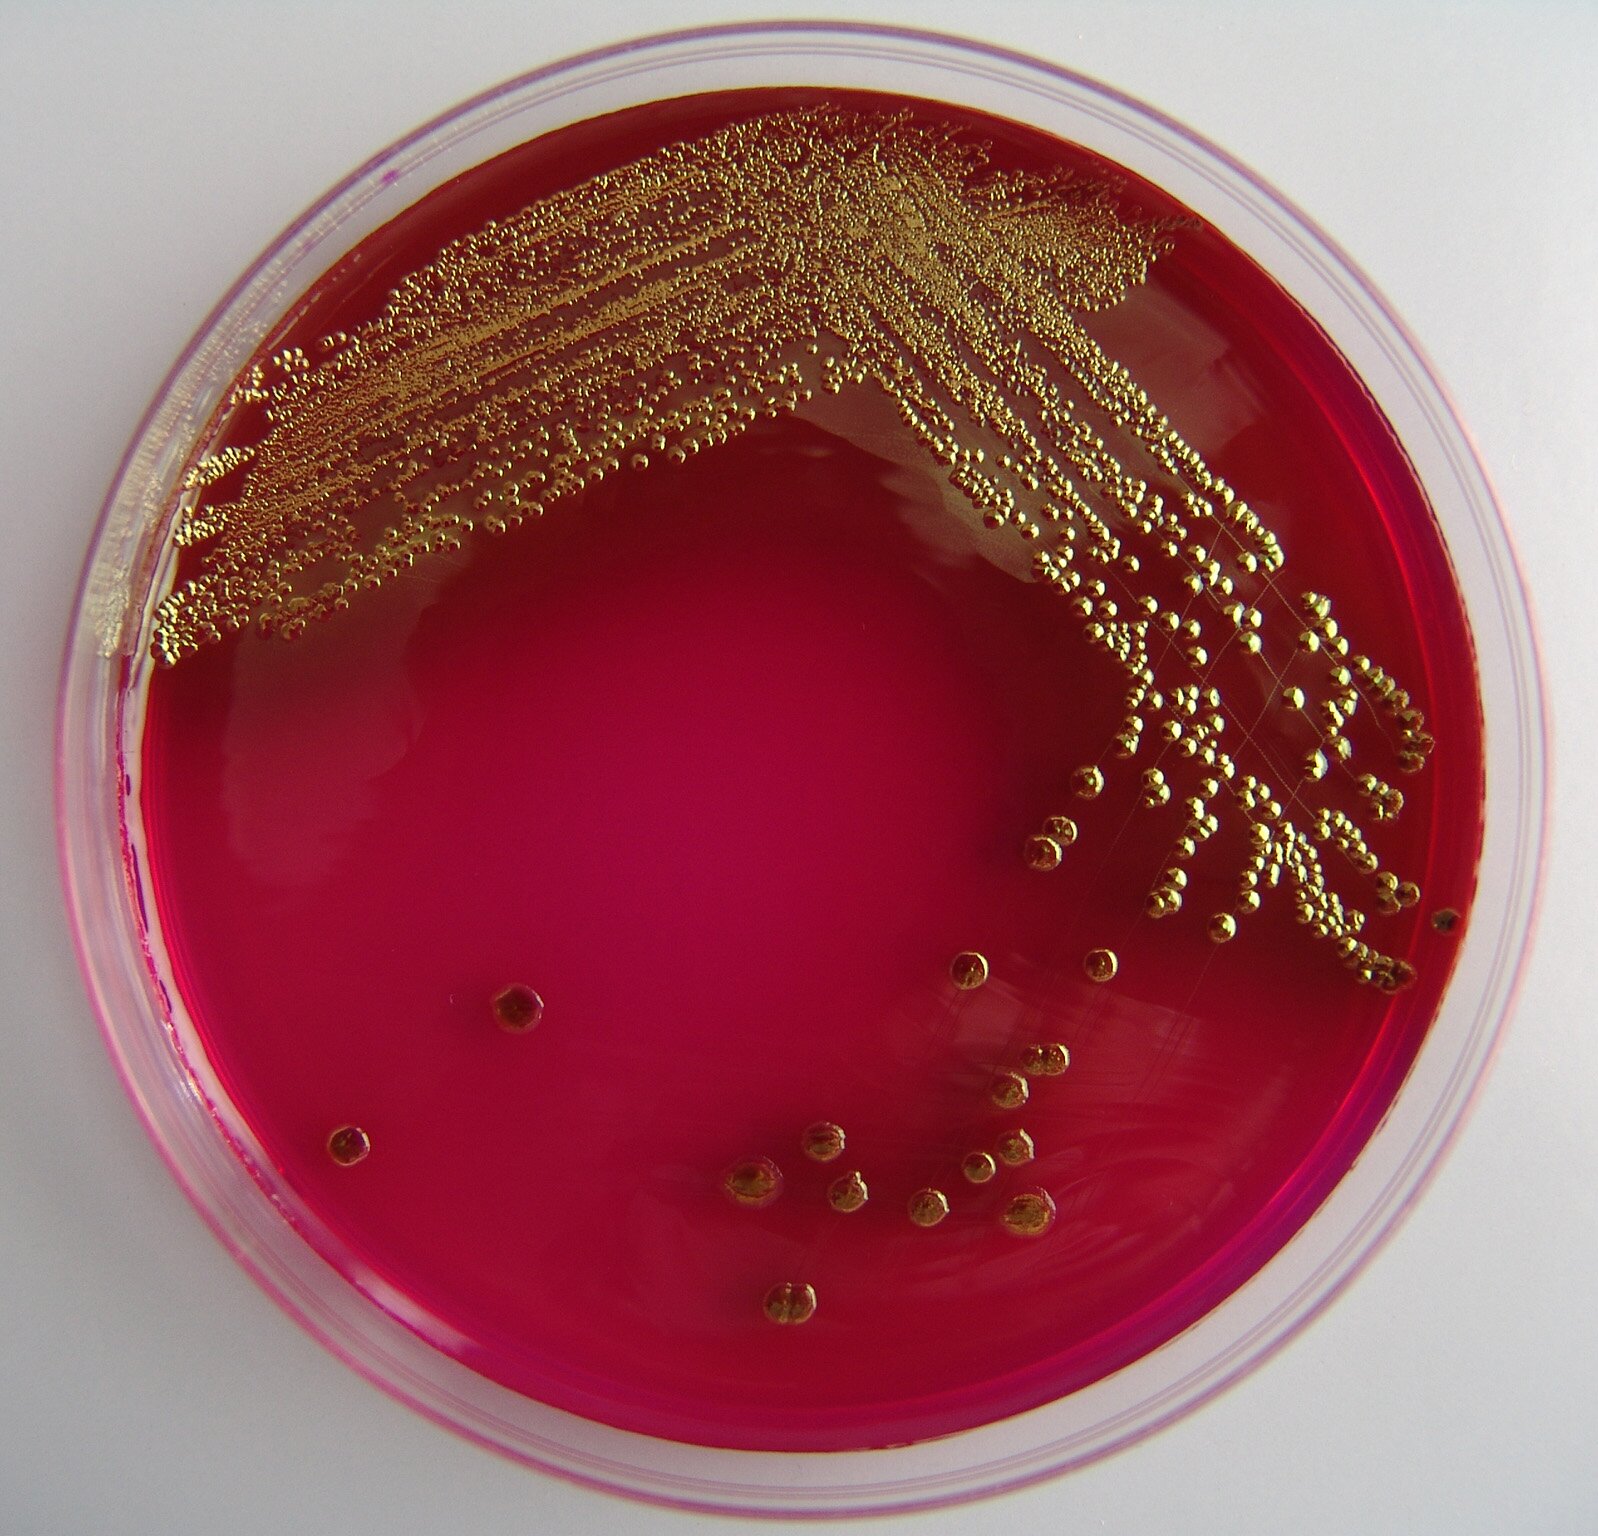 В смыве с пищевого оборудования производственного цеха выявлены санитарно-показательные микроорганизмы БГКП (бактерии группы кишечной палочки).